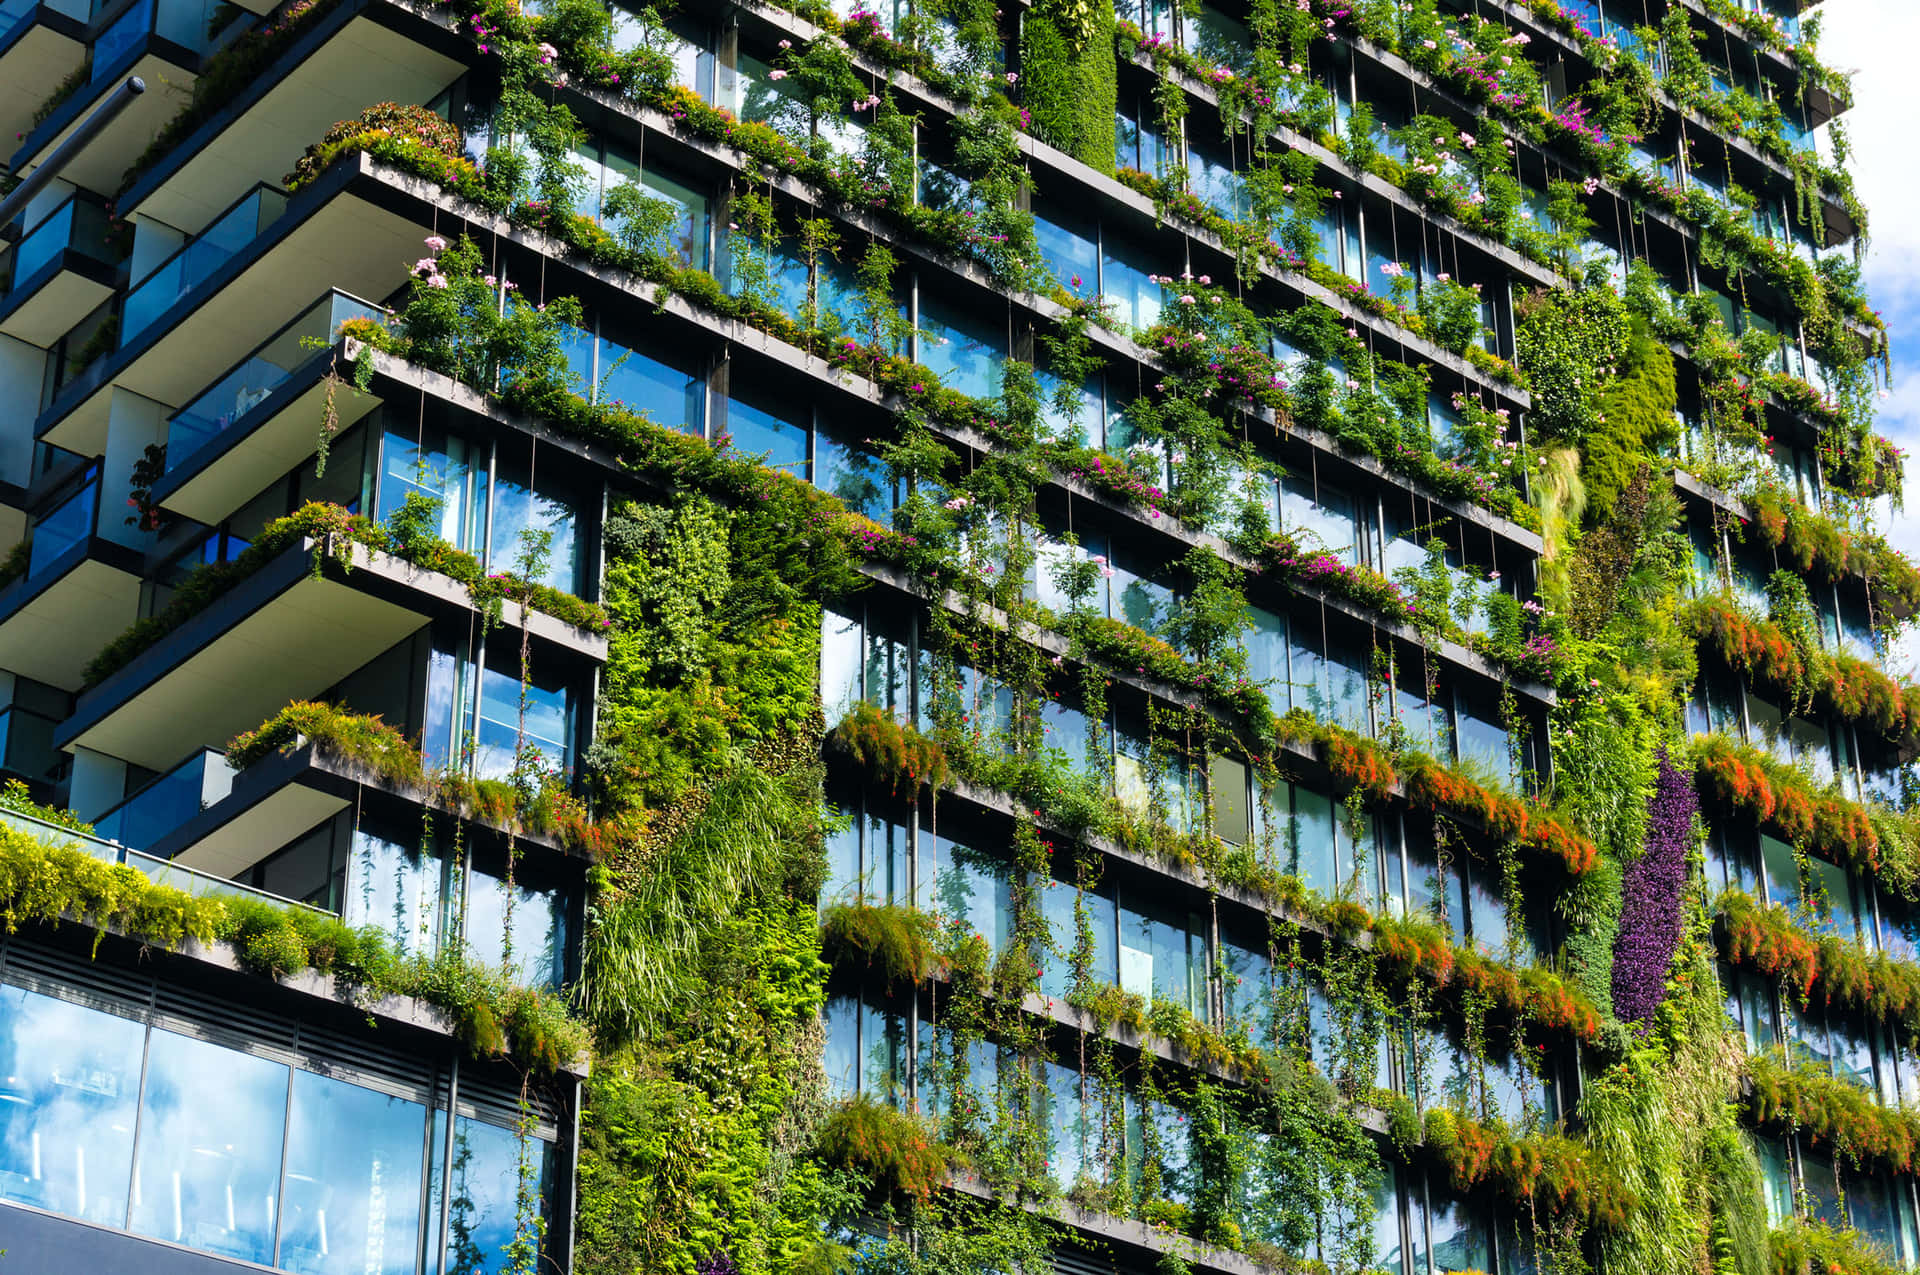 Complejode Edificios Sostenibles Y Verdes Fondo de pantalla